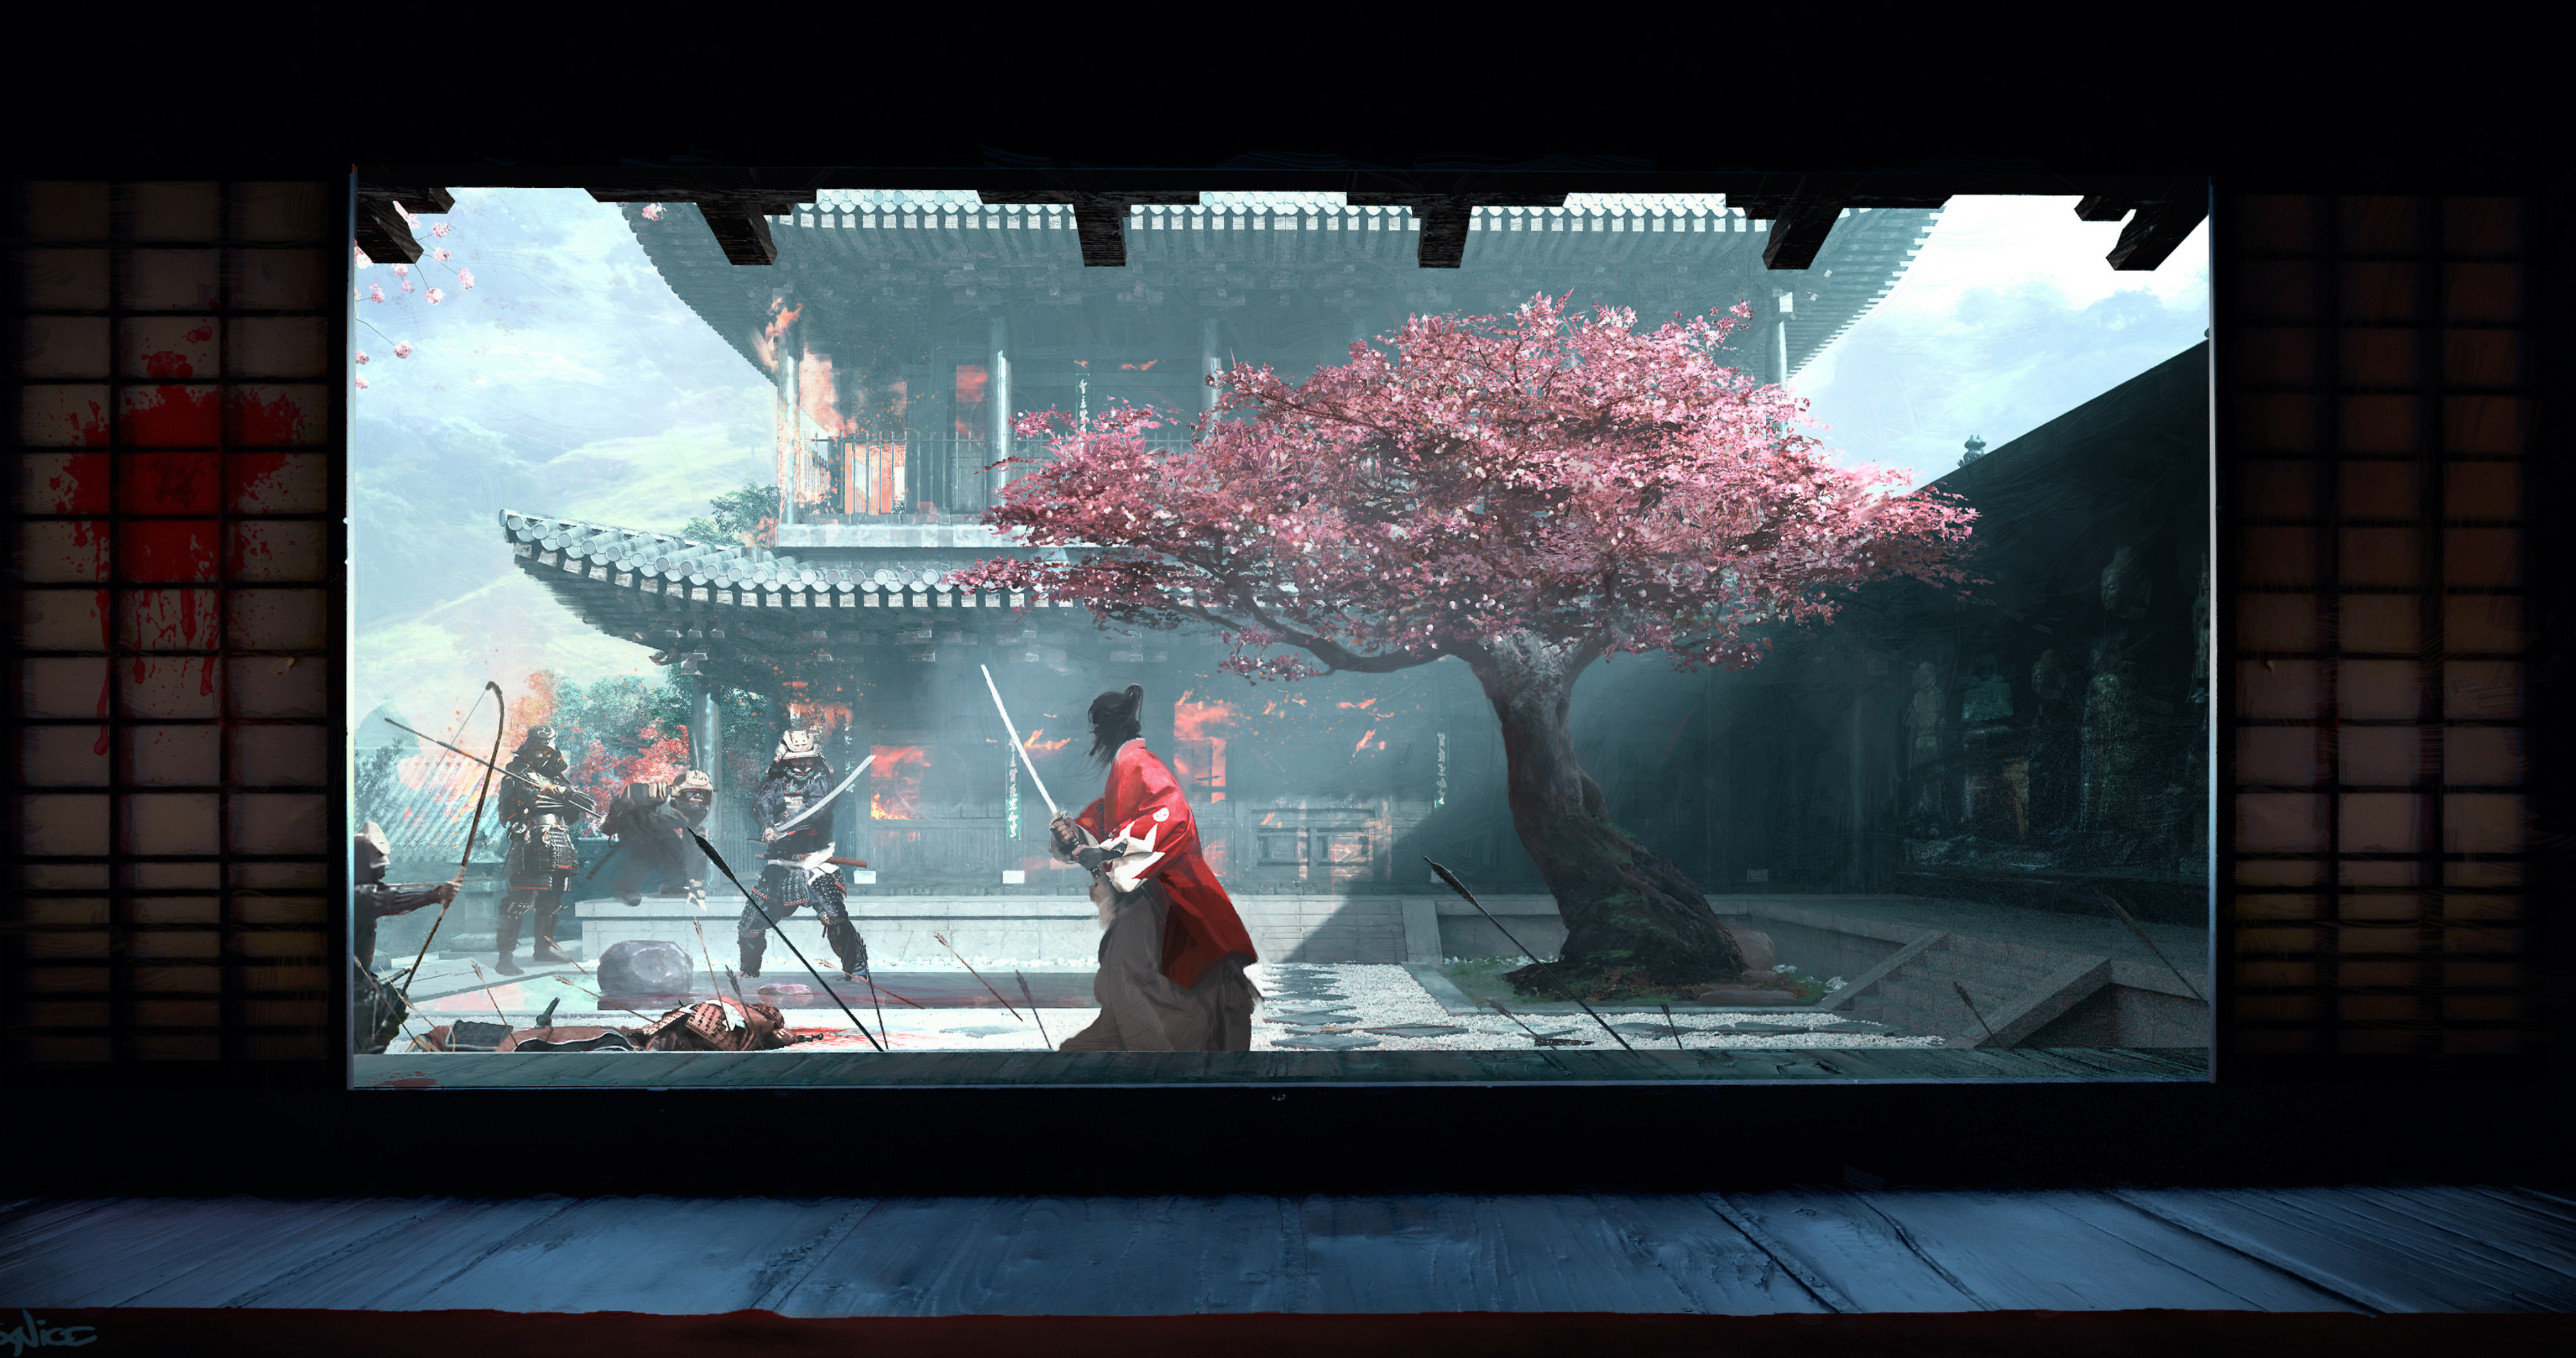 樱花树的院子里拔刀对峙的日本忍者和武士的场景插画壁纸